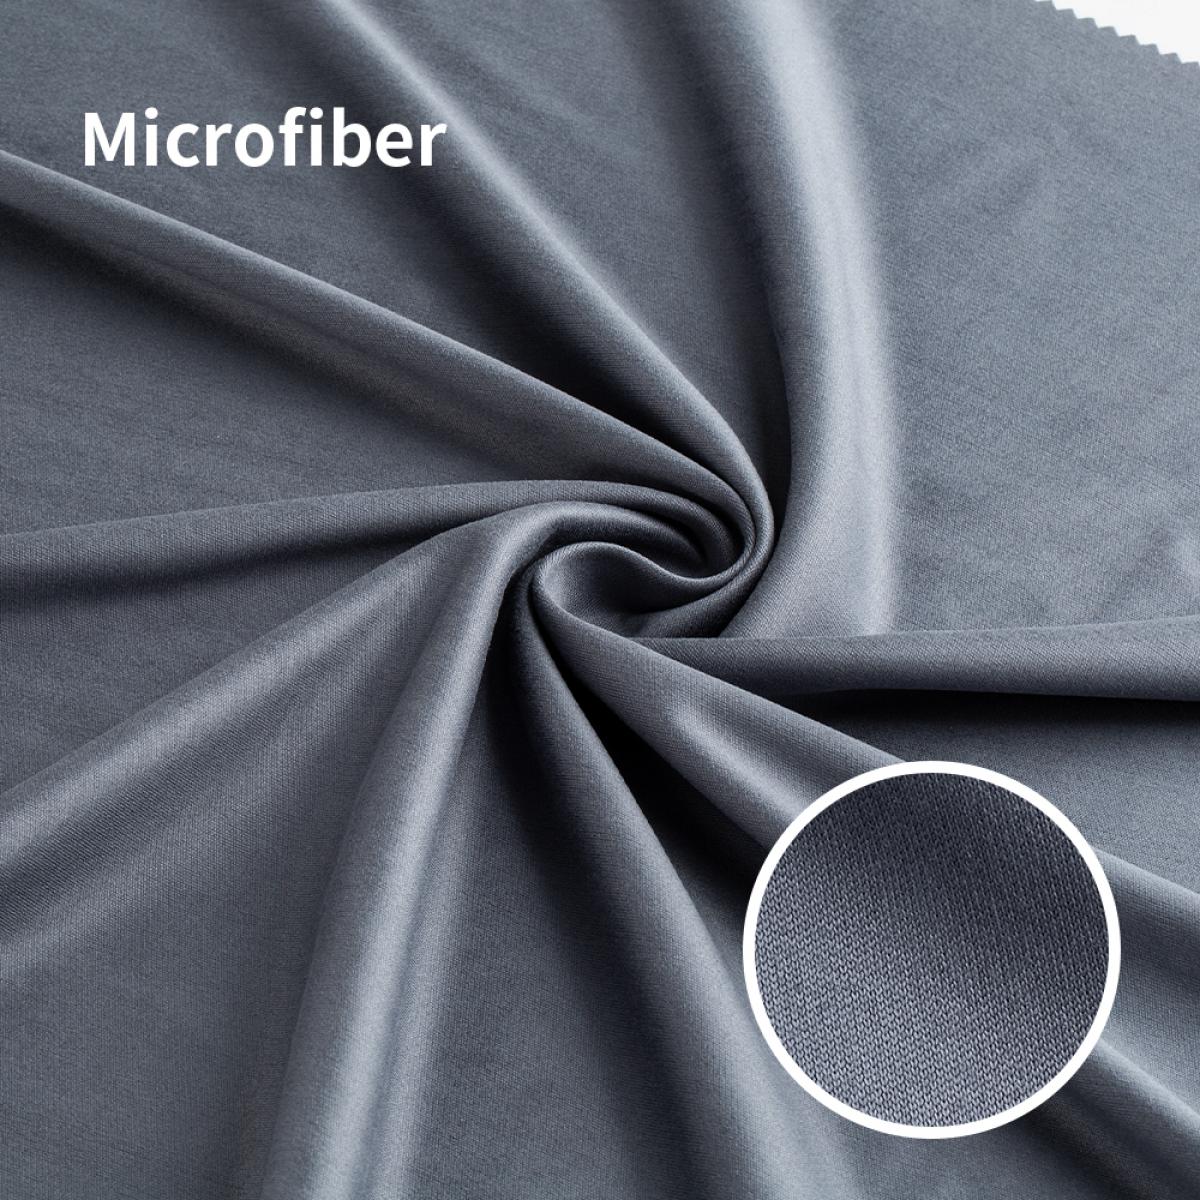 K&F Concept Chiffons de Nettoyage en Microfibre pour Verre